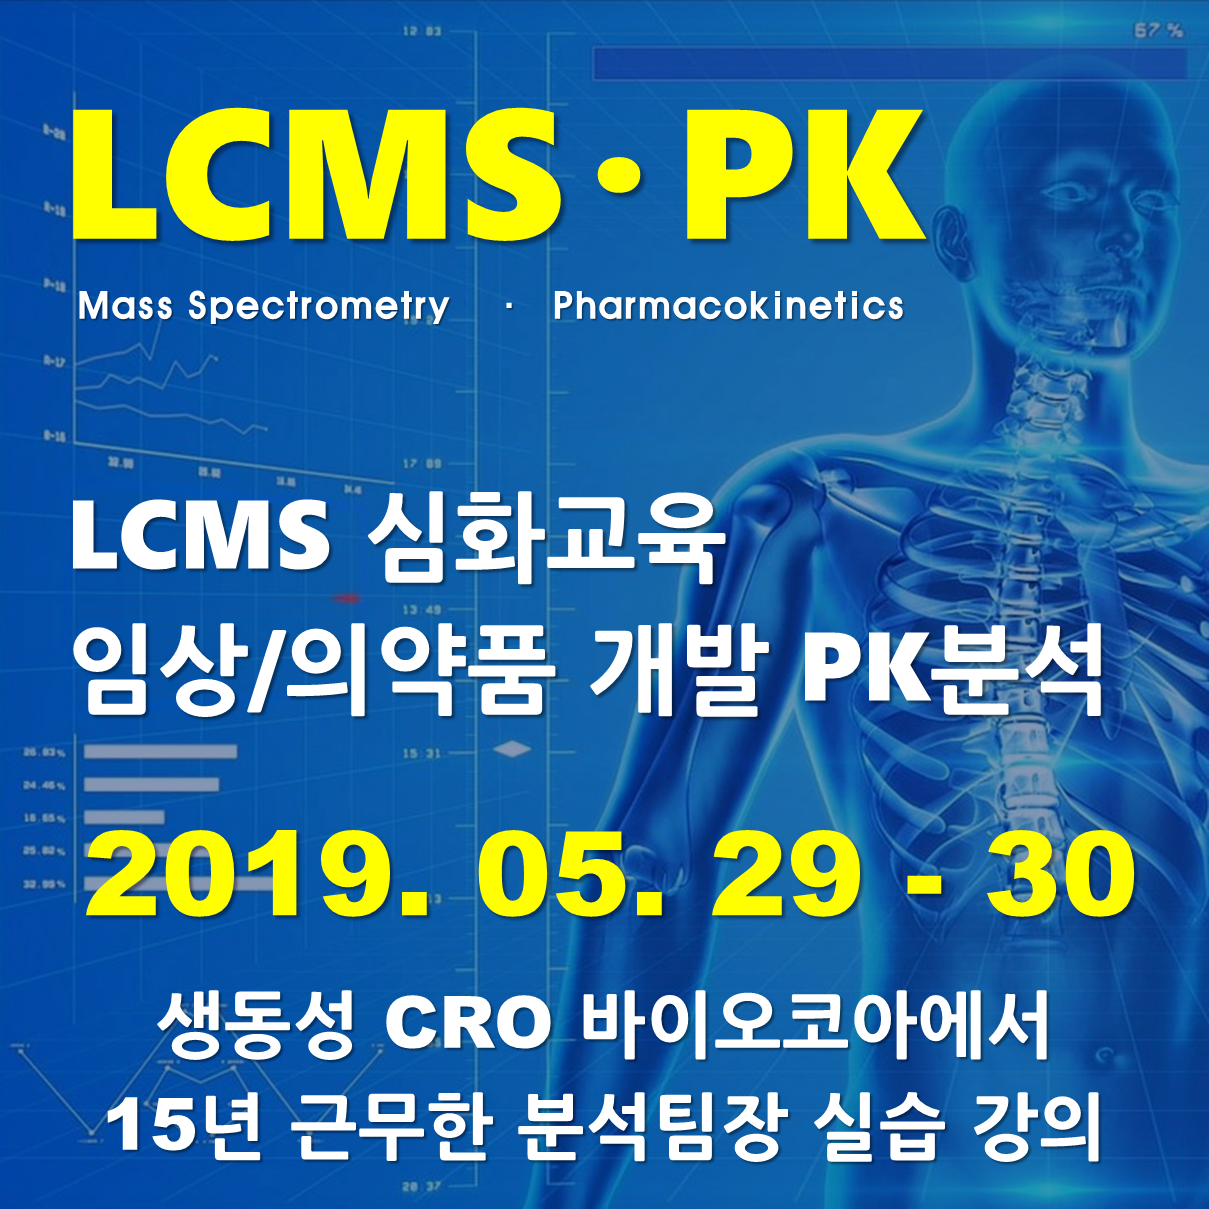 LCMS 심화교육 – 임상/의약품 개발 PK 분석 교육 - 실습과정